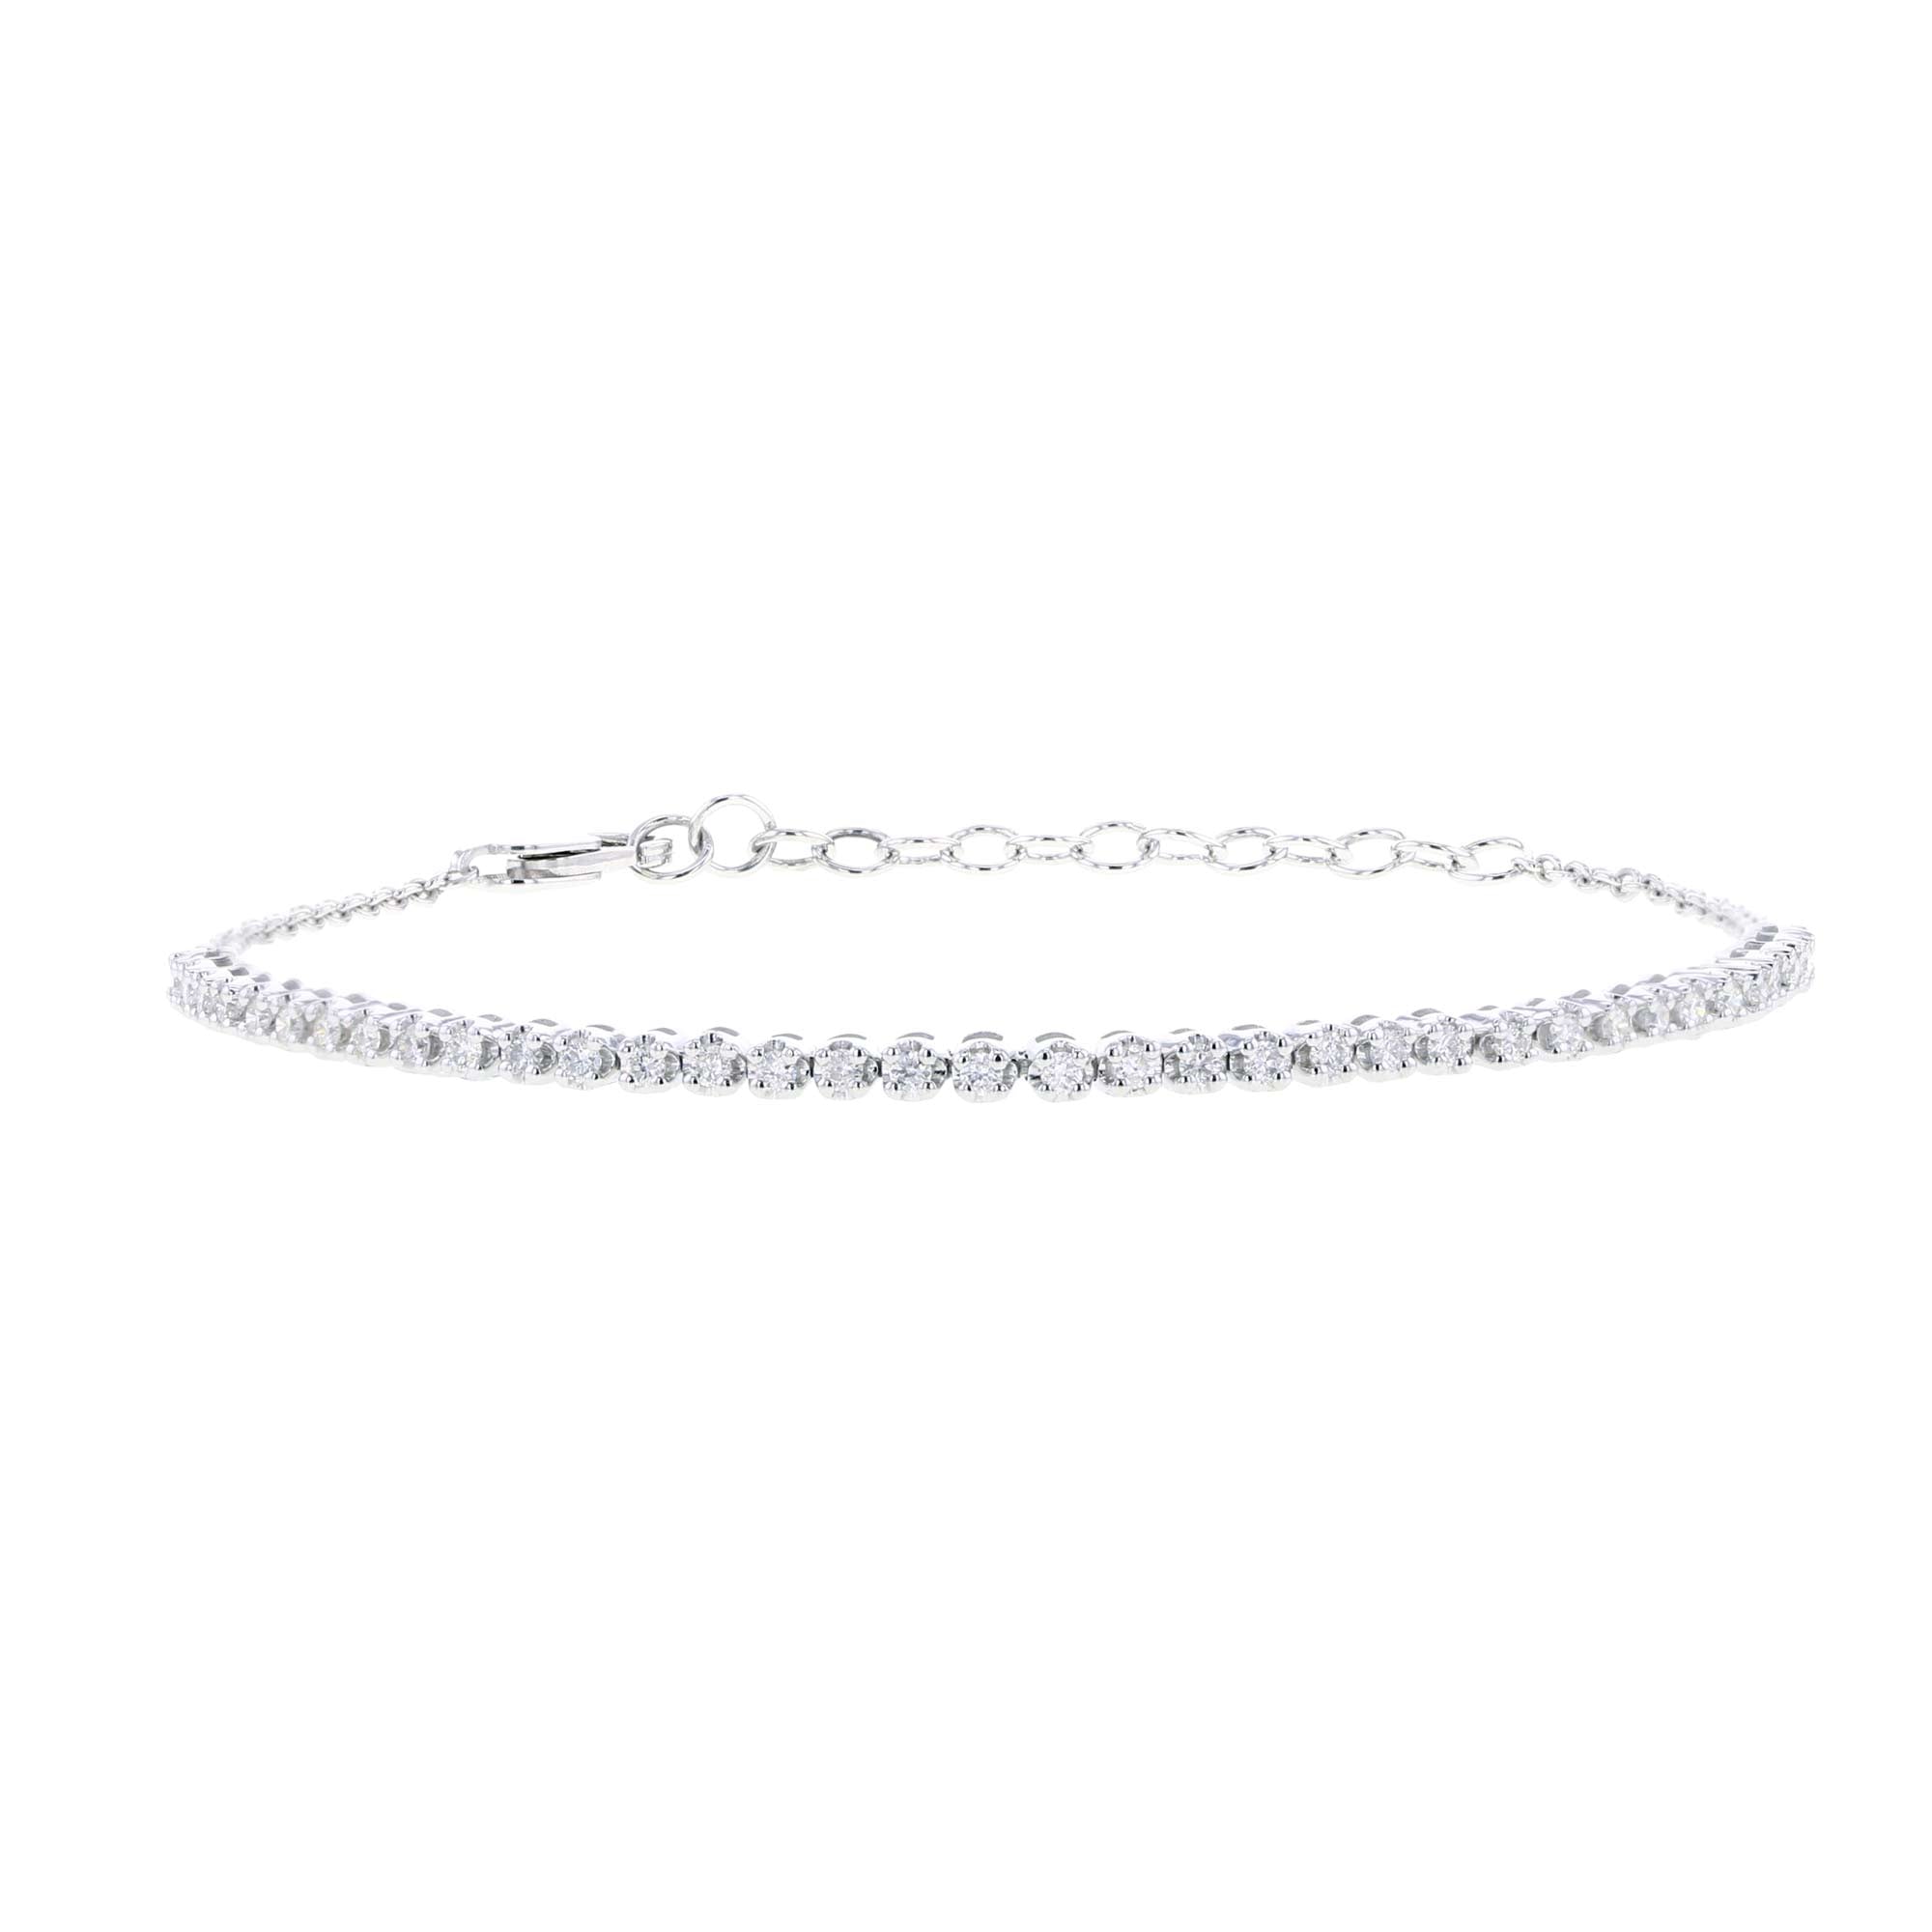 Izzie Stackable Diamond Ring Steven Singer Jewelers | Stackable diamond  rings, Beautiful jewelry diamonds, Stackable diamond